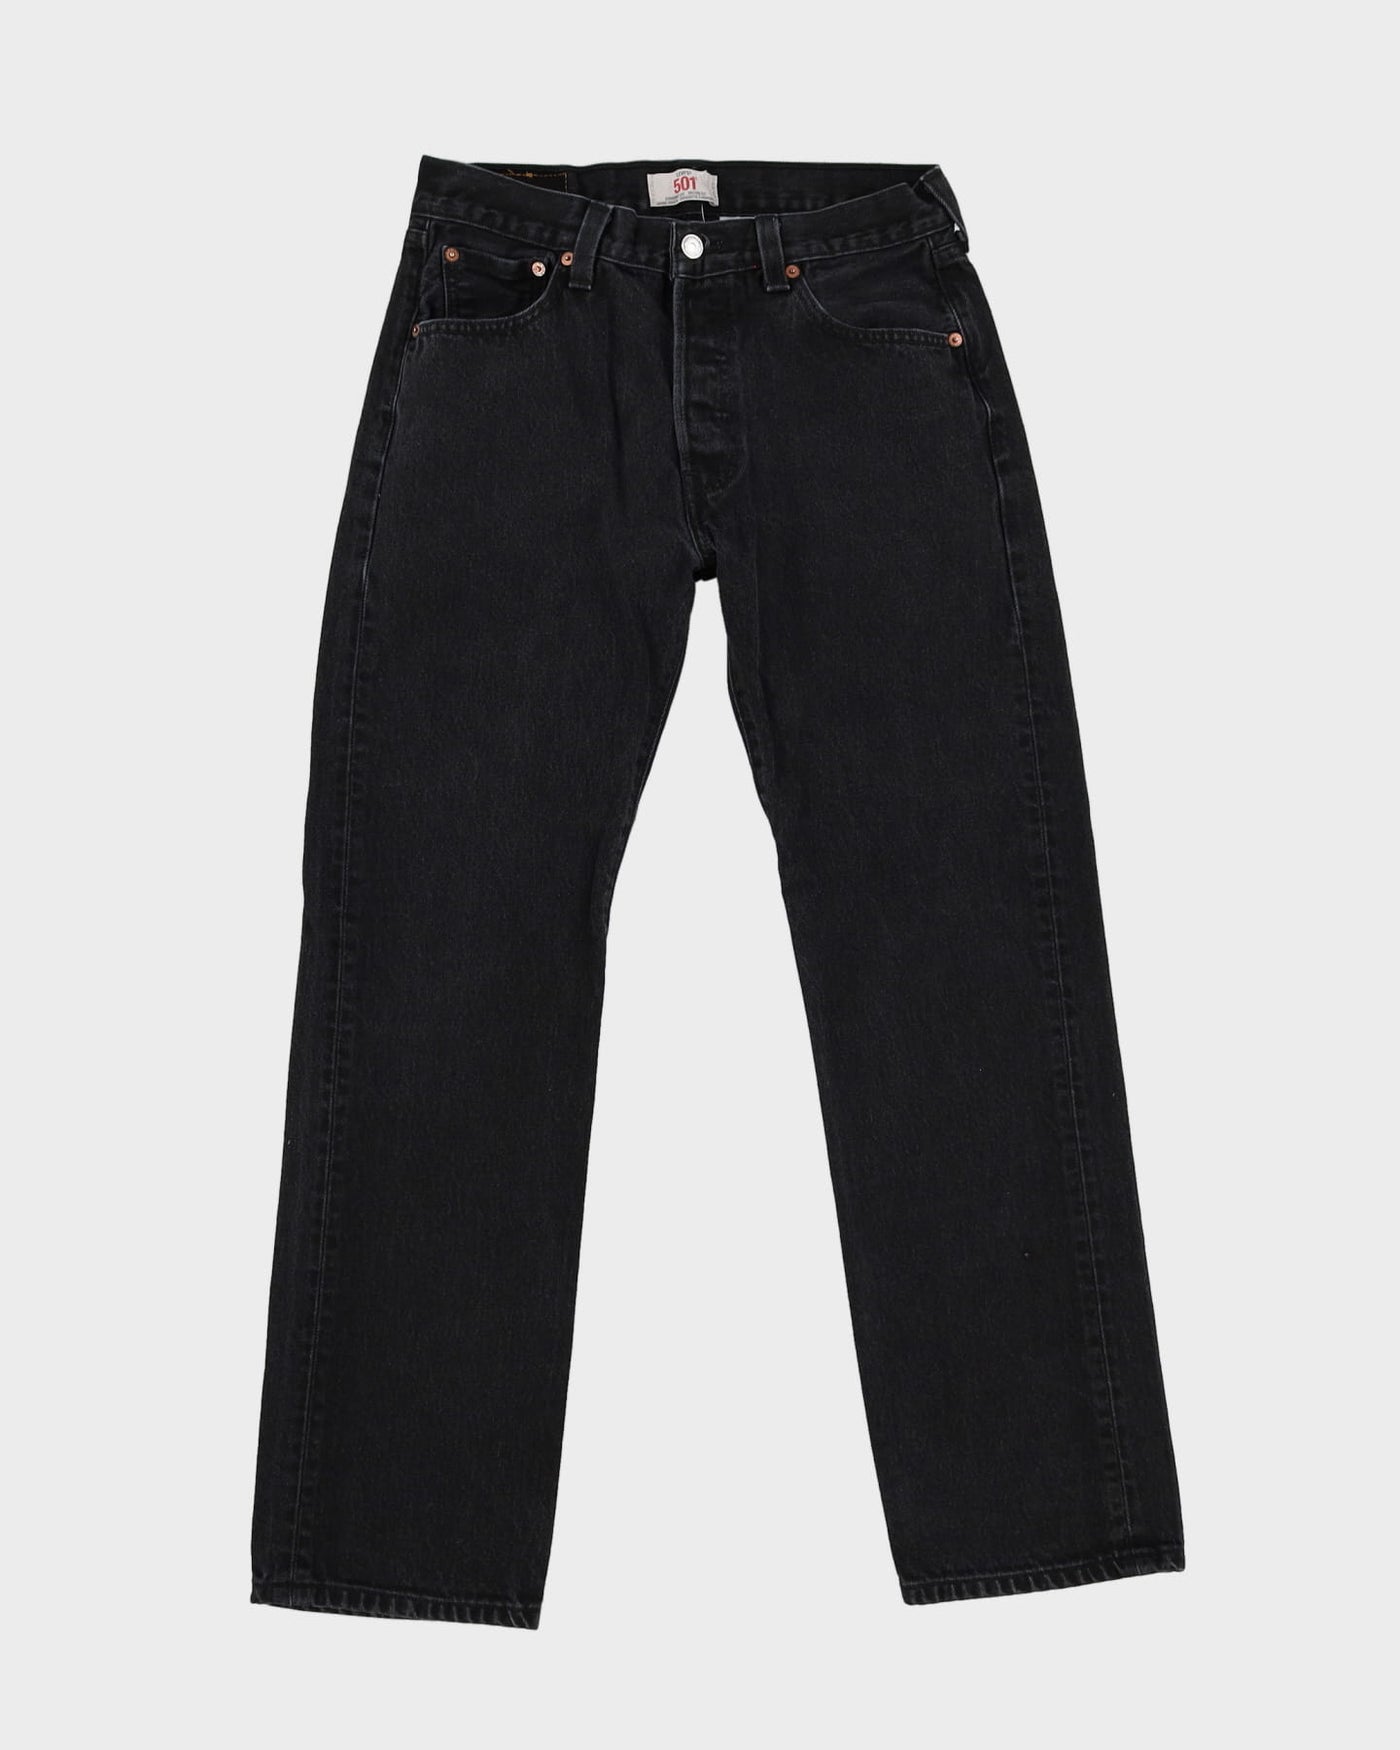 Levi's 501 Dark Wash Jeans - W30 L30